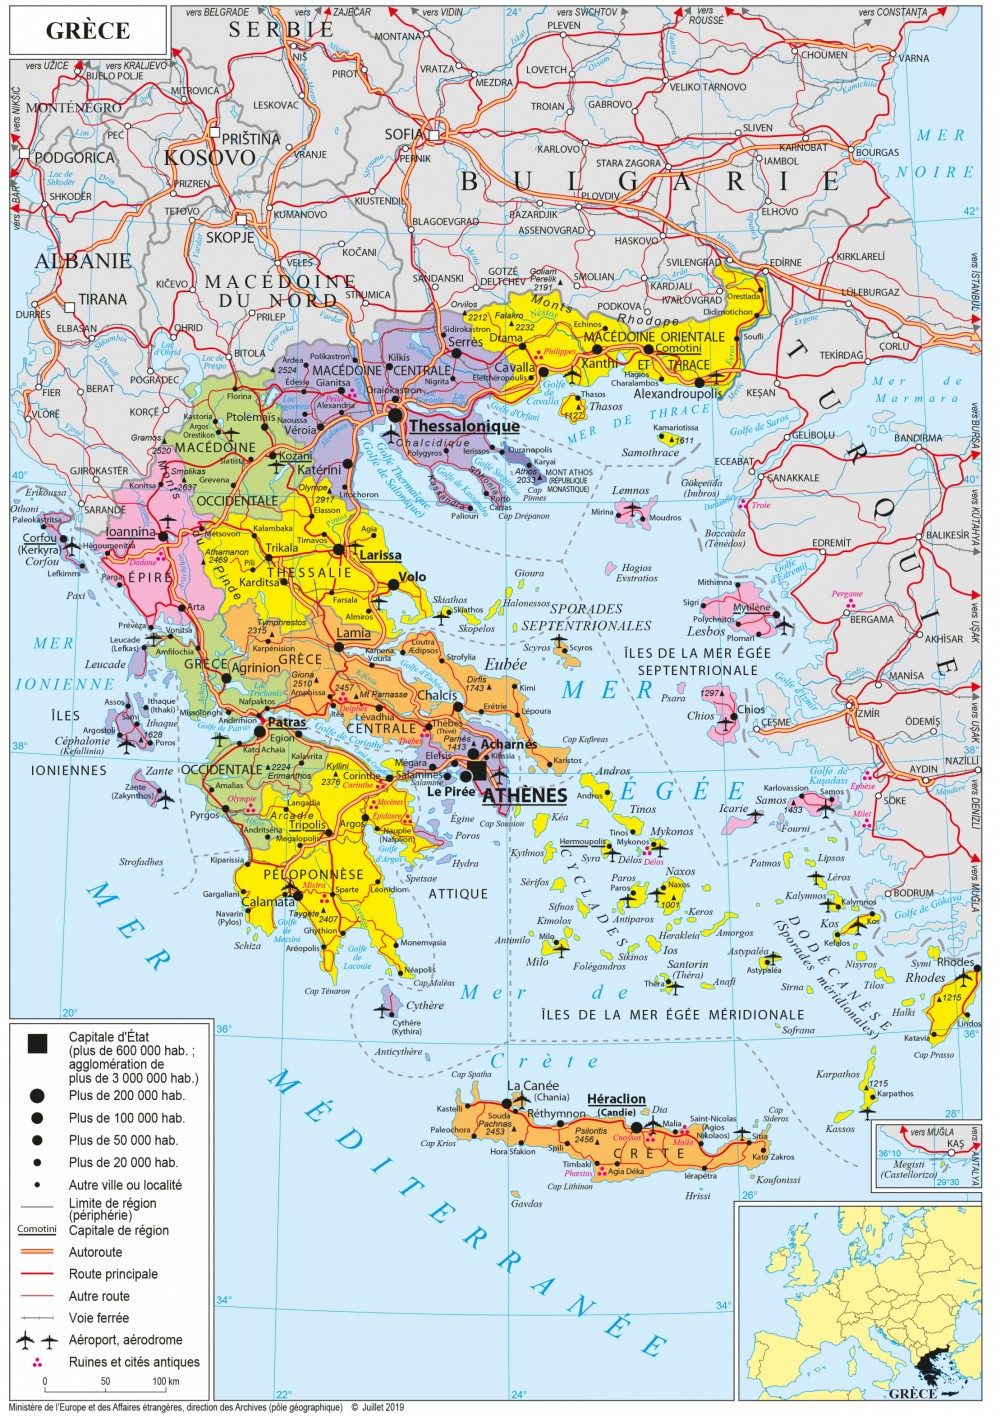 [Update] Bản đồ nước Hy Lạp (GREECE) khổ lớn phóng to năm 2022 31